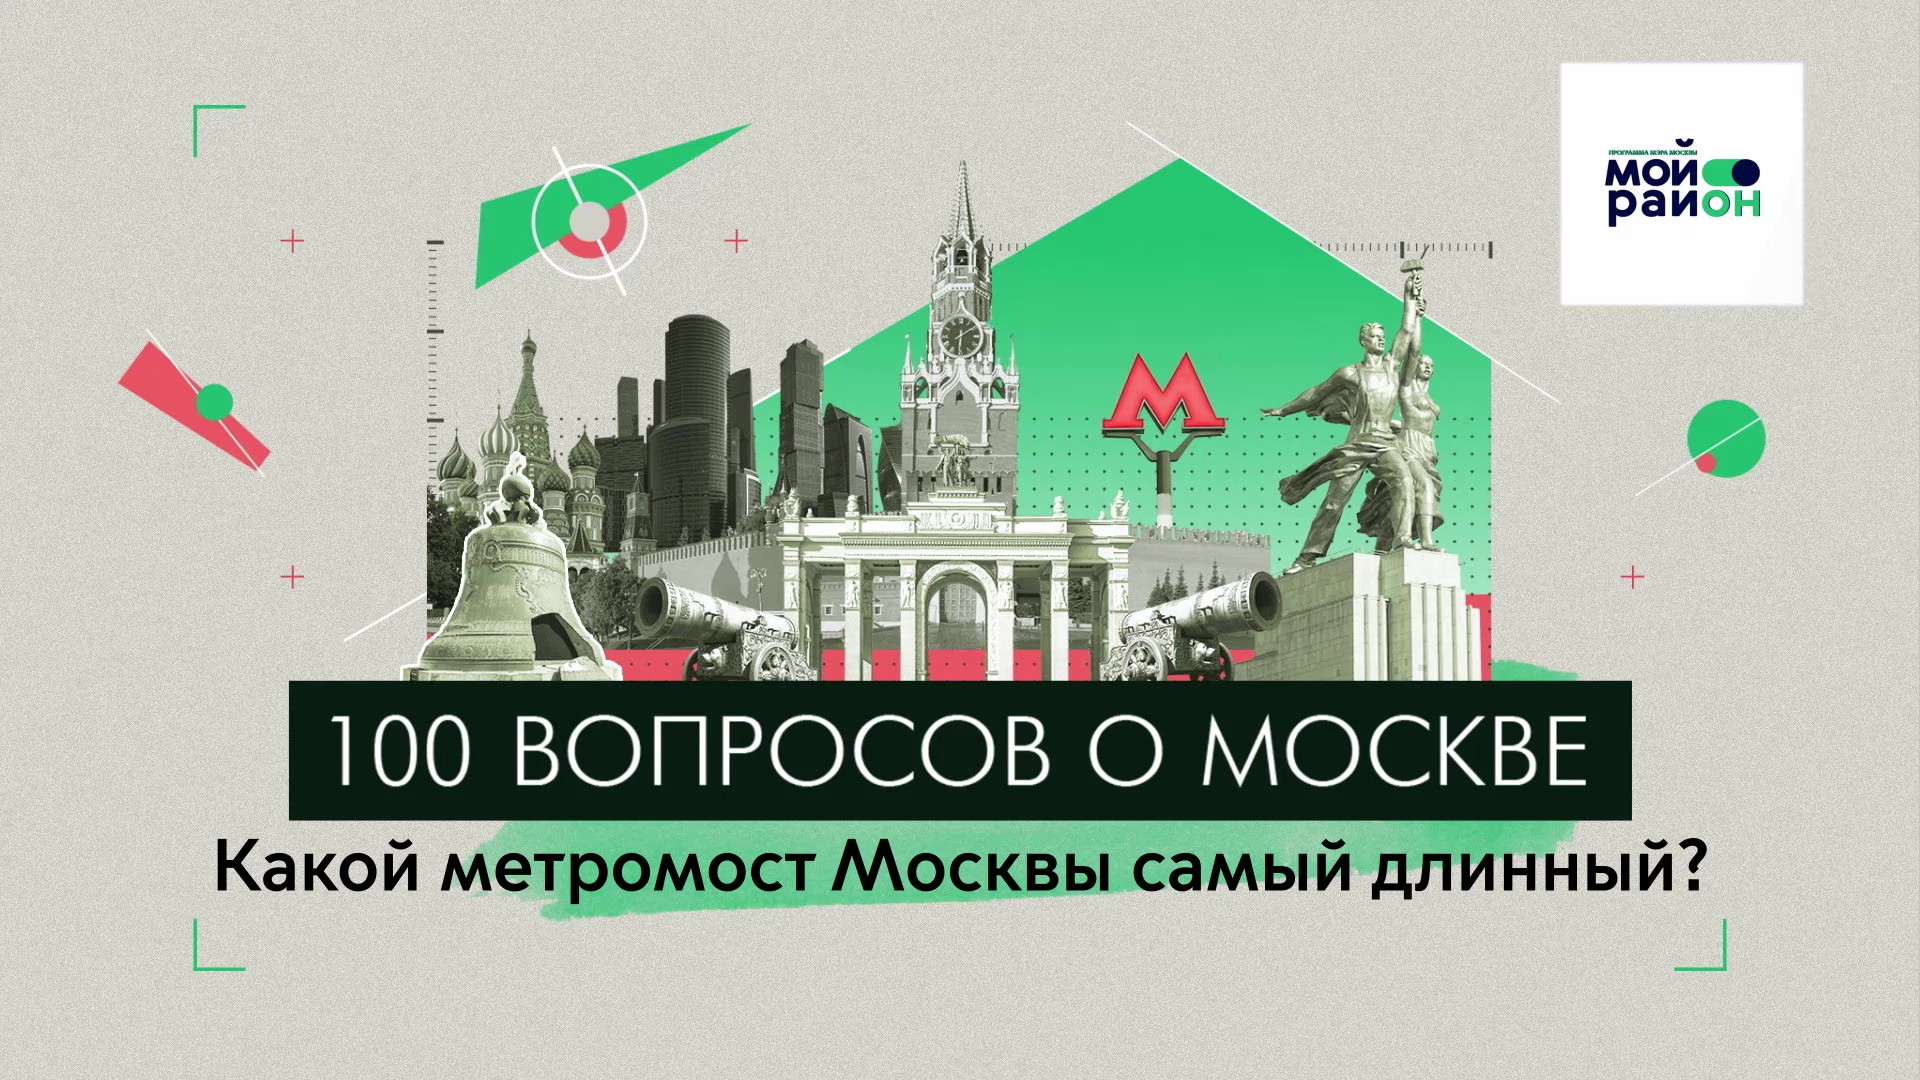 100 вопросов о Москве: Какой метромост Москвы самый длинный?